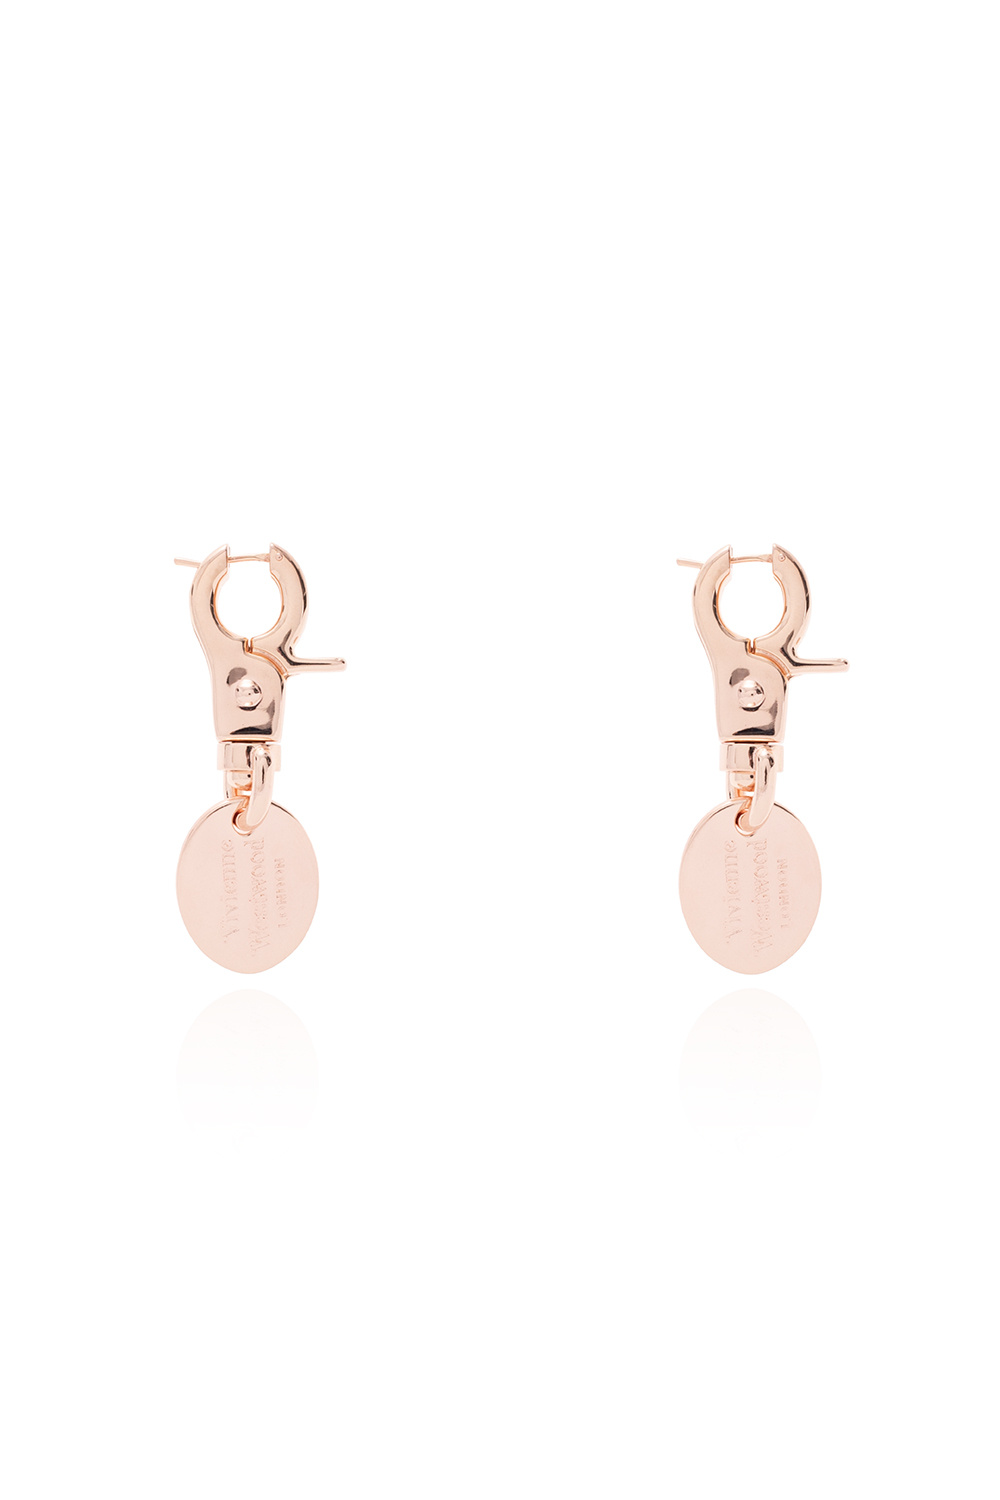 Vivienne Westwood ‘Venetia’ earrings